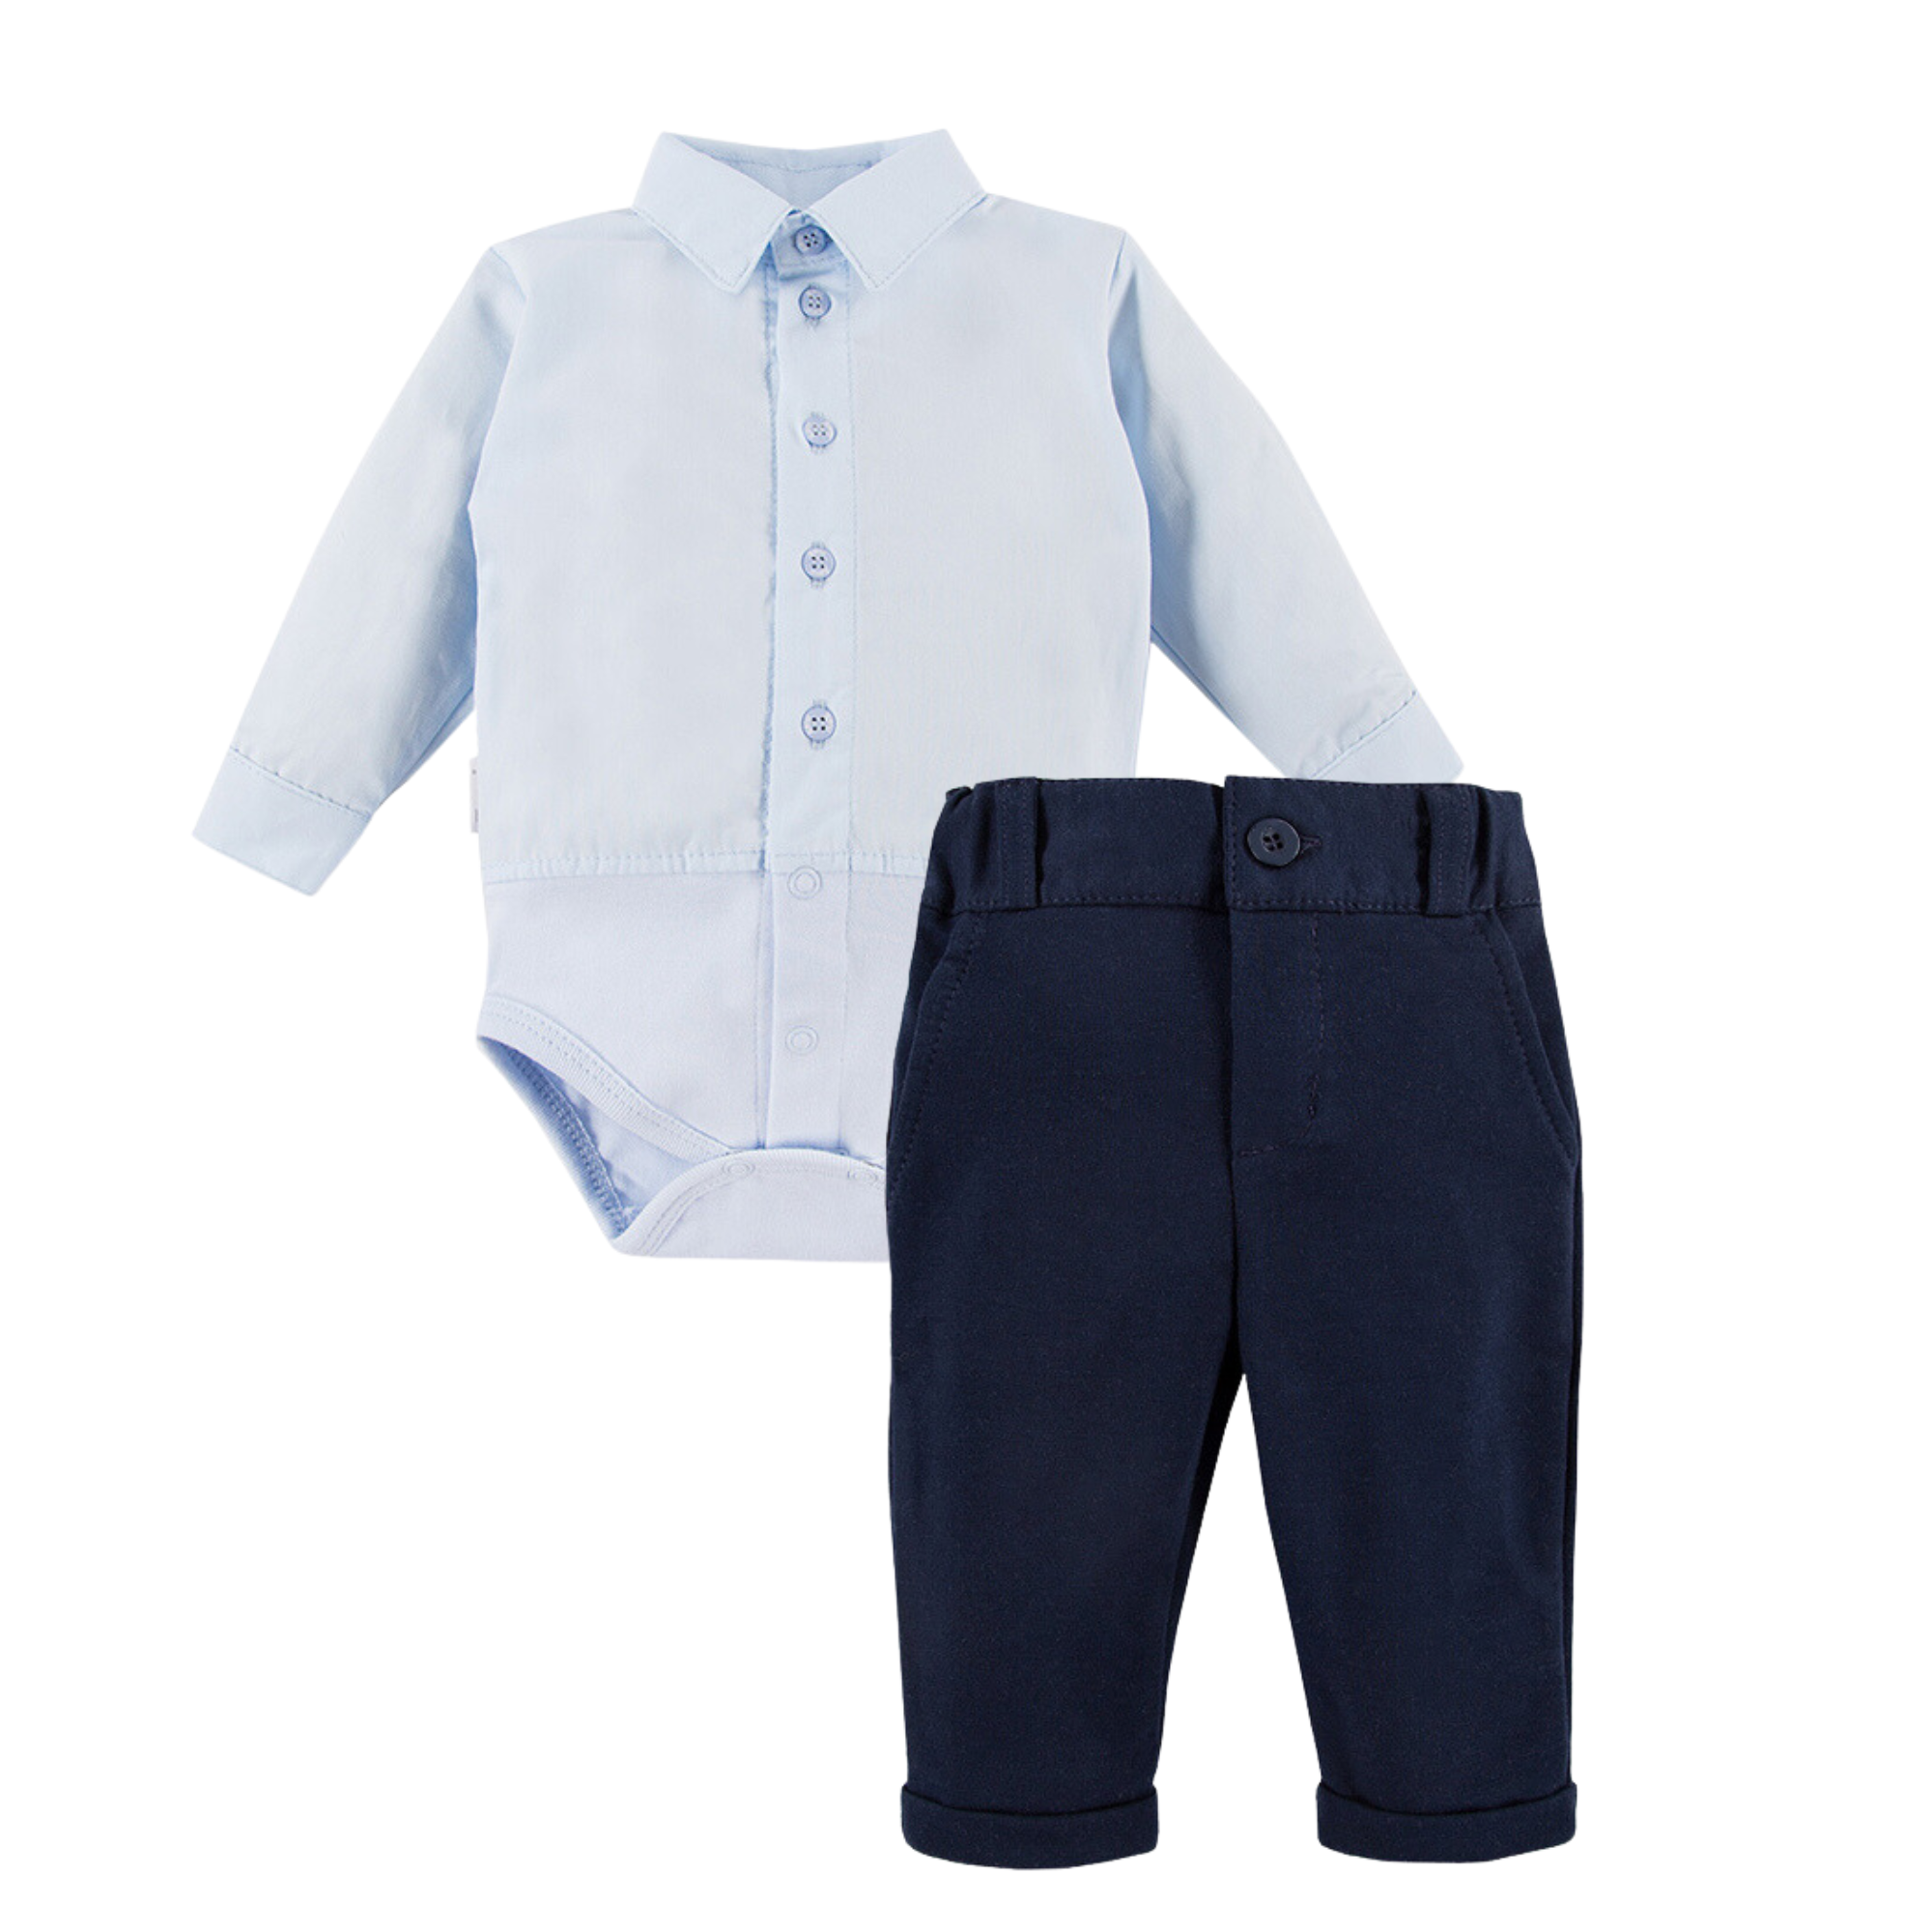 Skjortset - Ljusblå babyskjorta och marinblå byxa - Ceremony